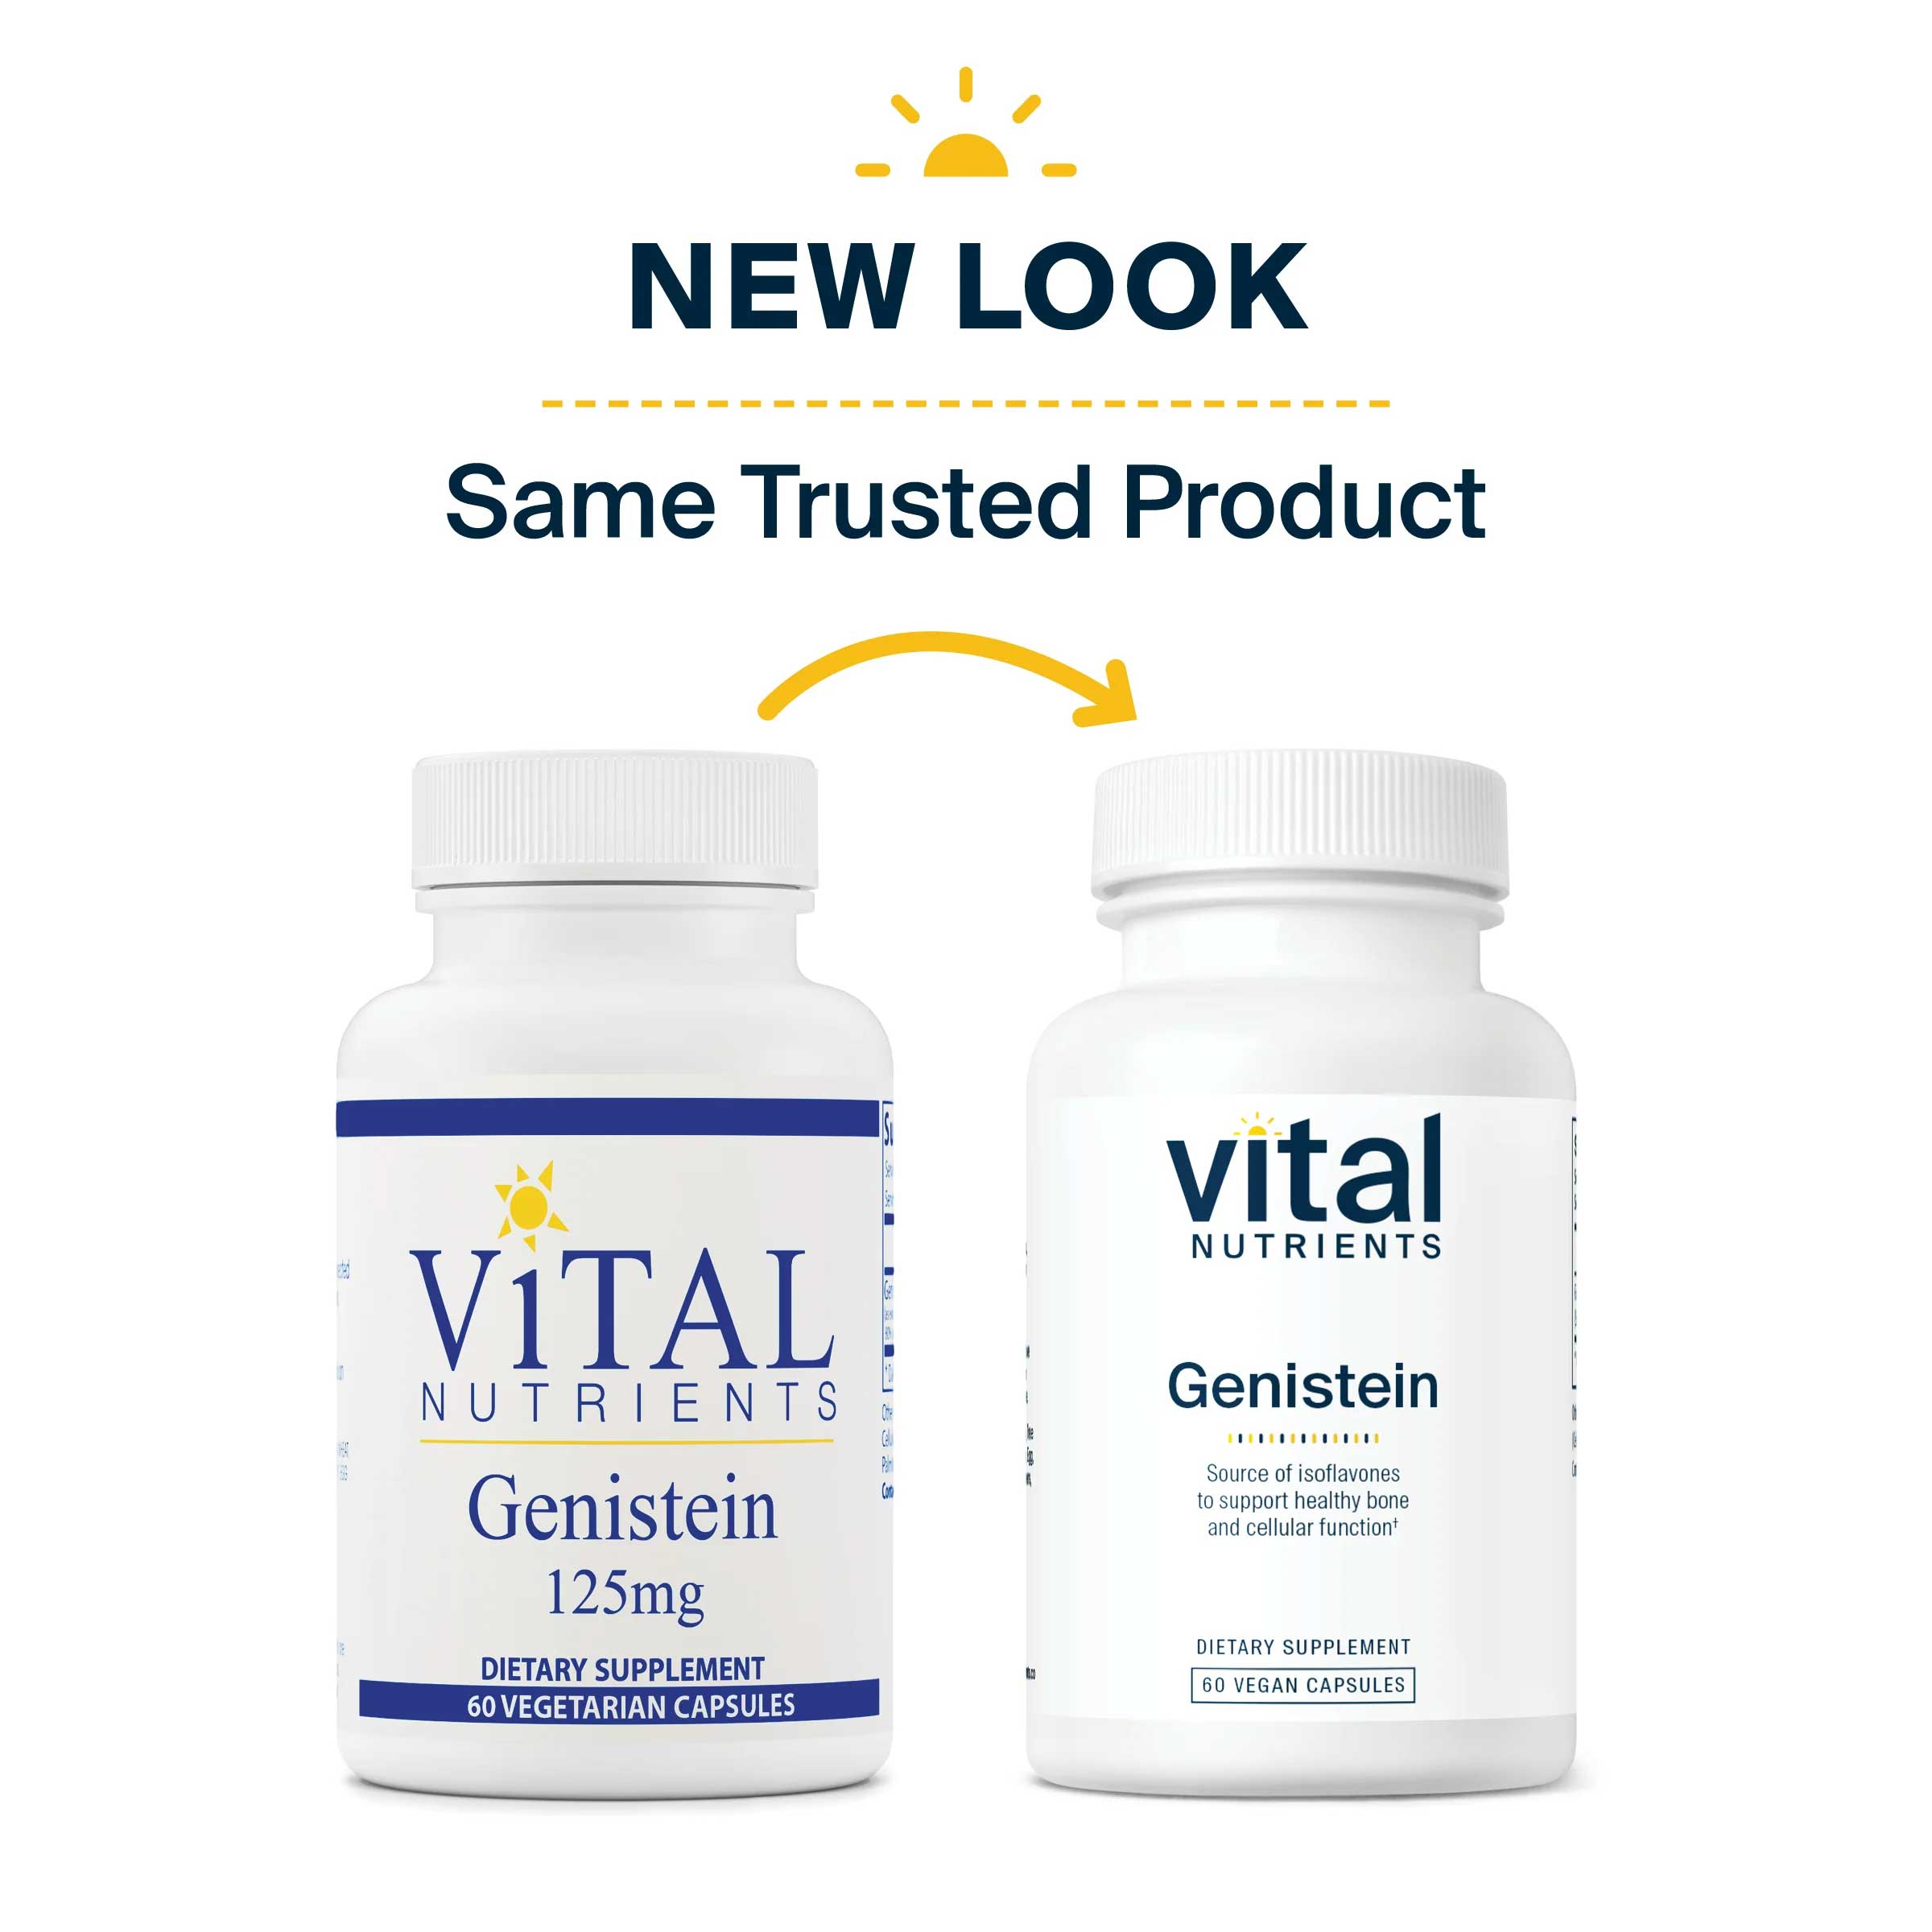 Vital Nutrients Genistein 125mg New Look